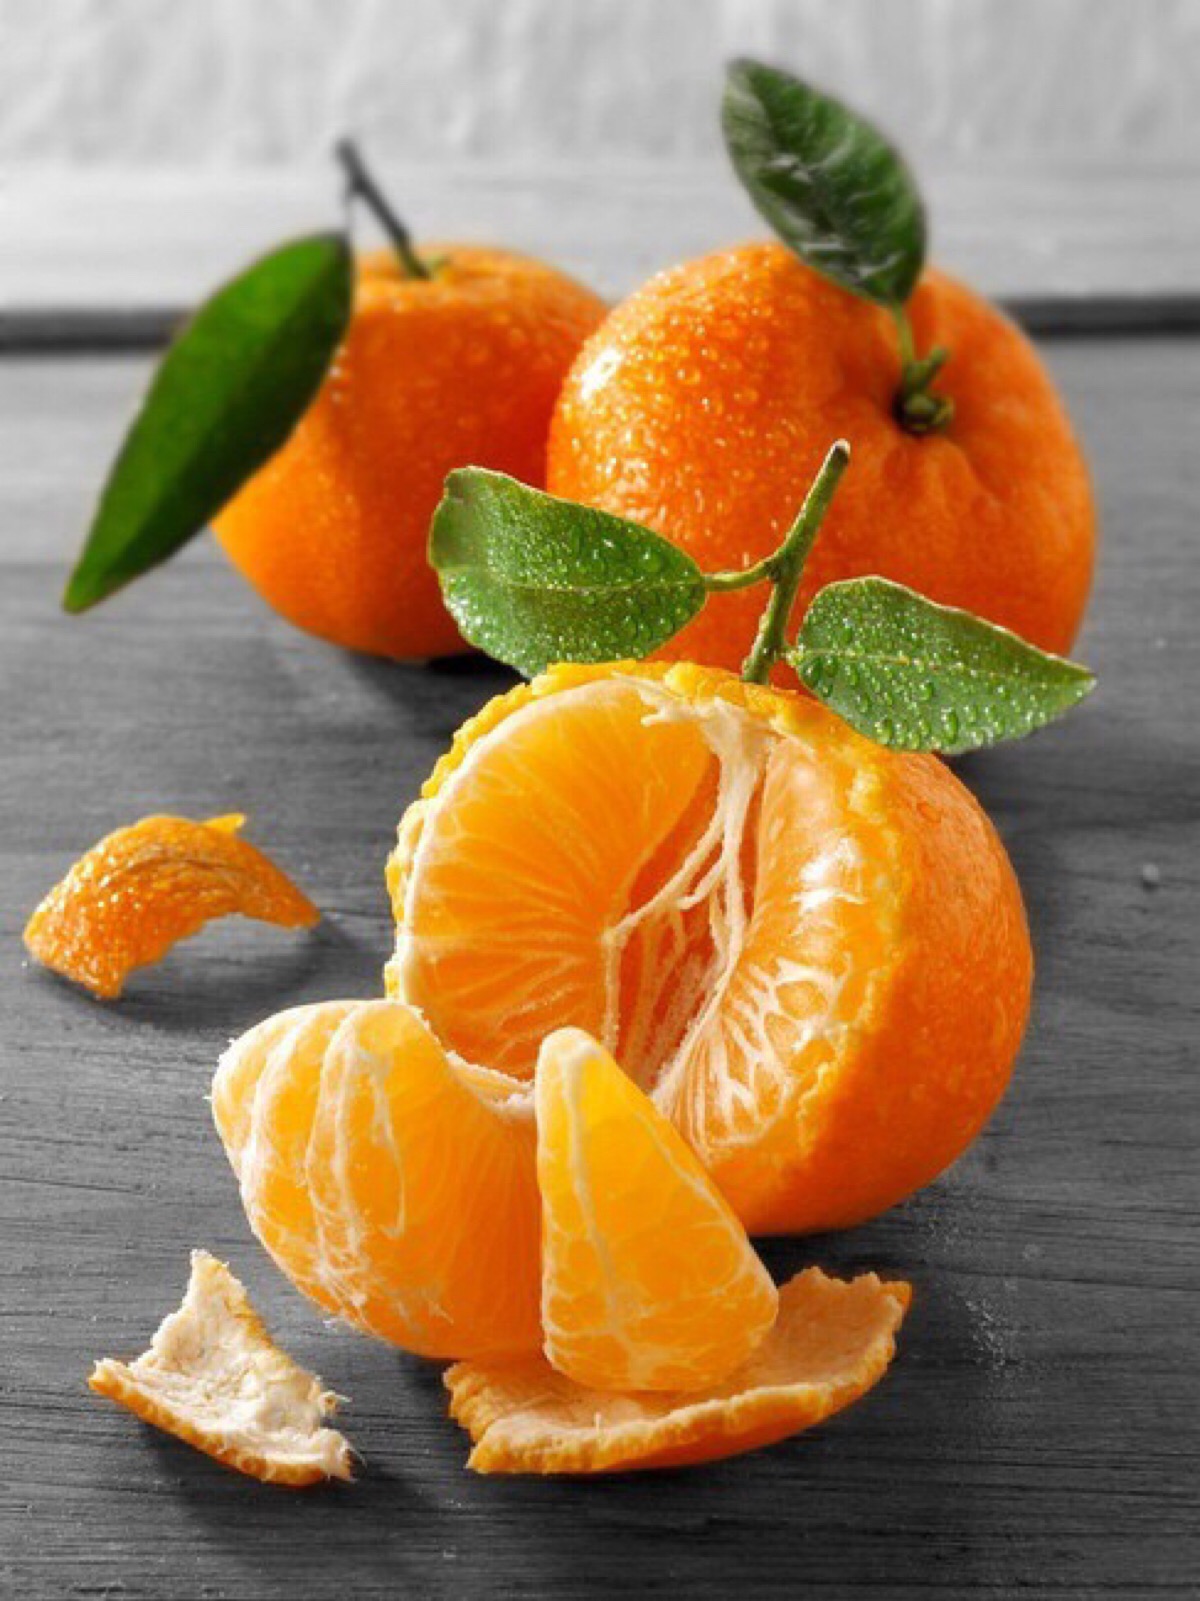 橙子和柑子有什么区别 - 花百科